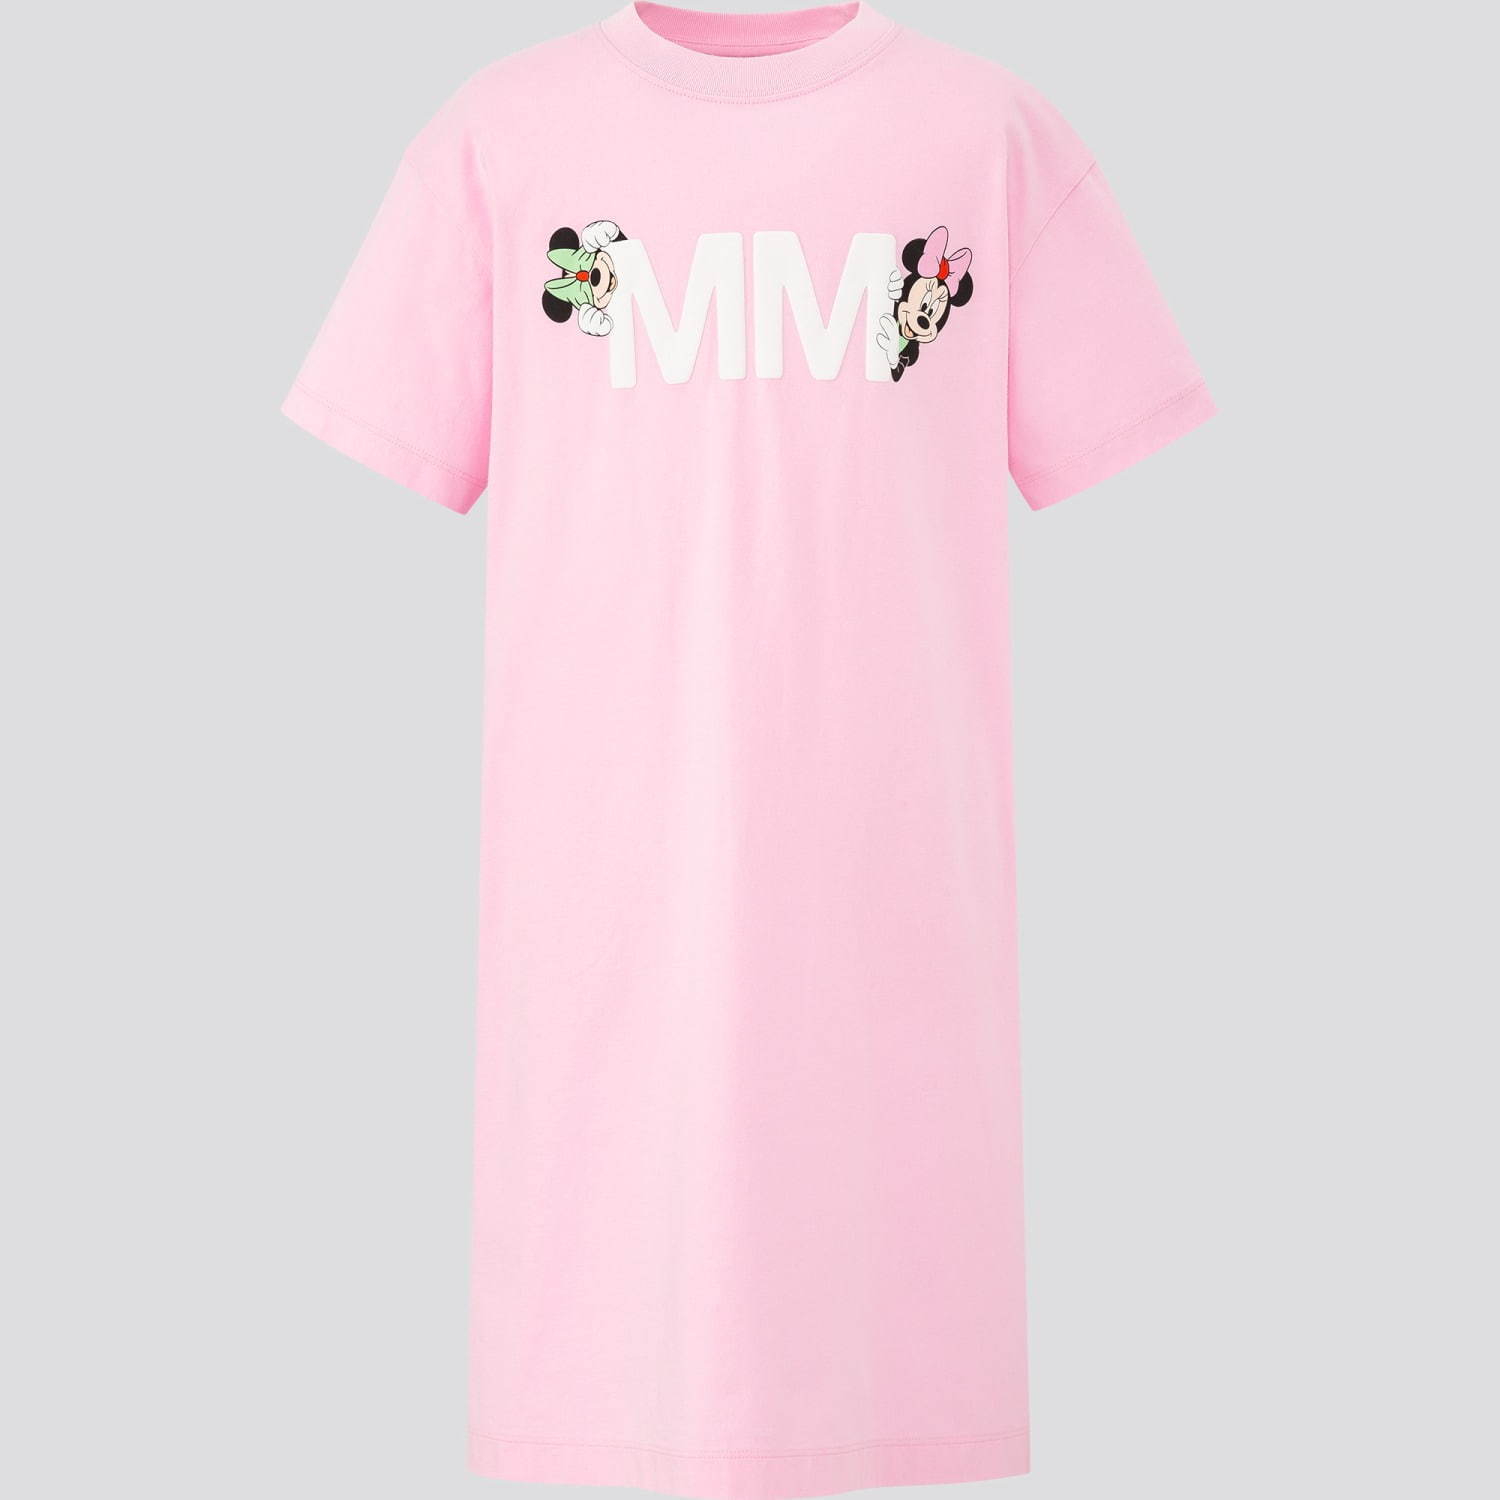 ユニクロut アンブッシュ ディズニー ミニーマウス がテーマのtシャツ ミニーマウス型バッグも ファッションプレス